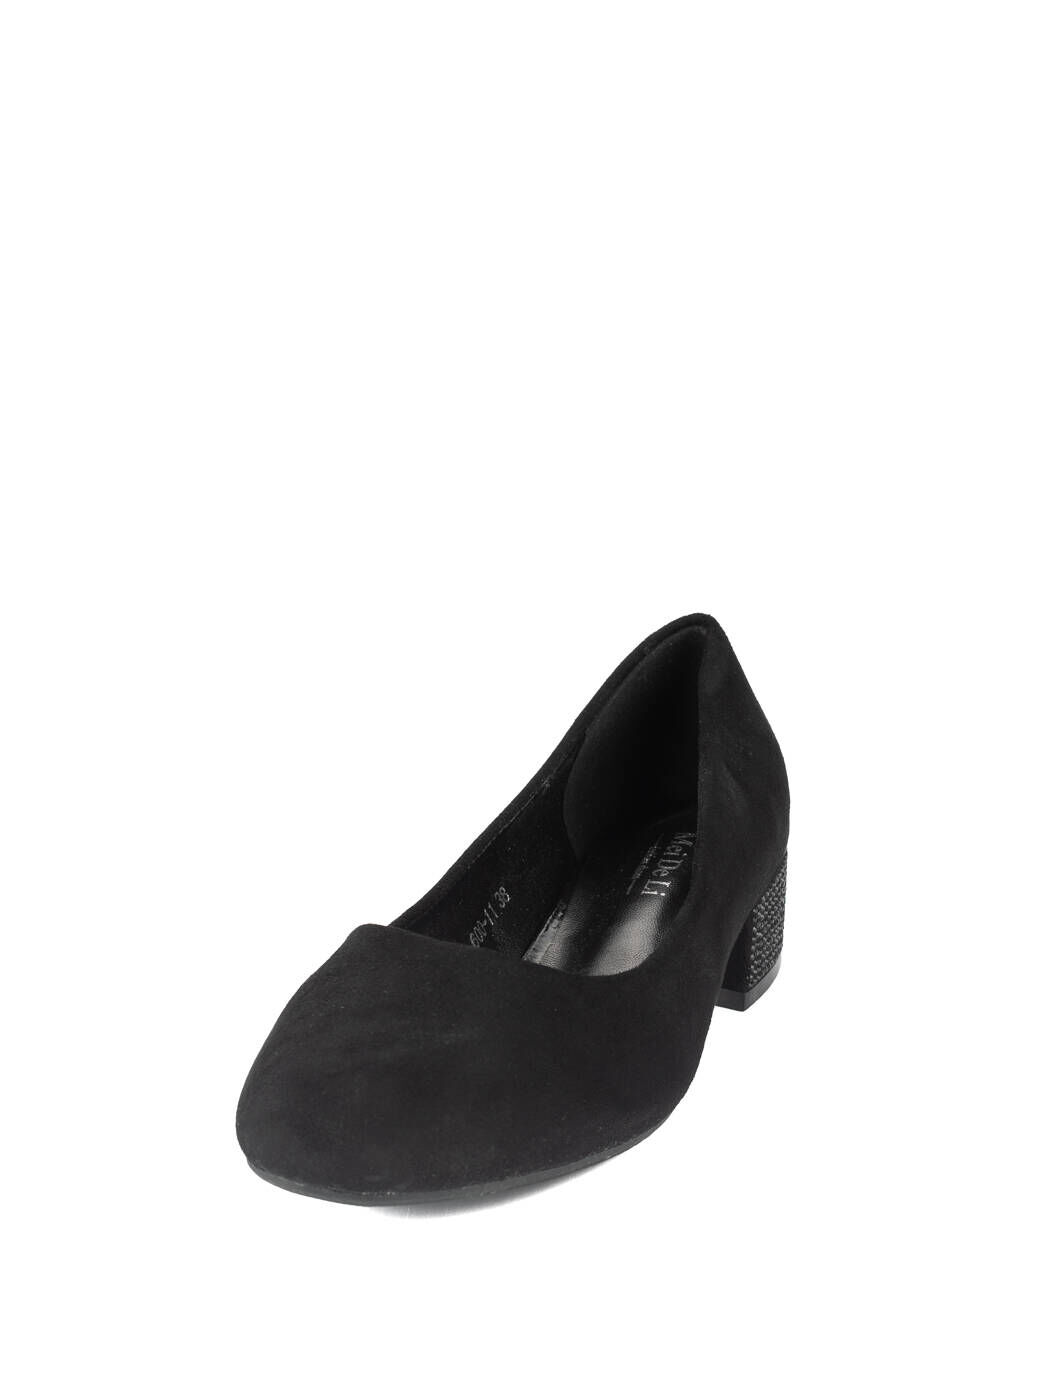 Туфли женские чёрные экозамша каблук устойчивый демисезон 11M вид 0